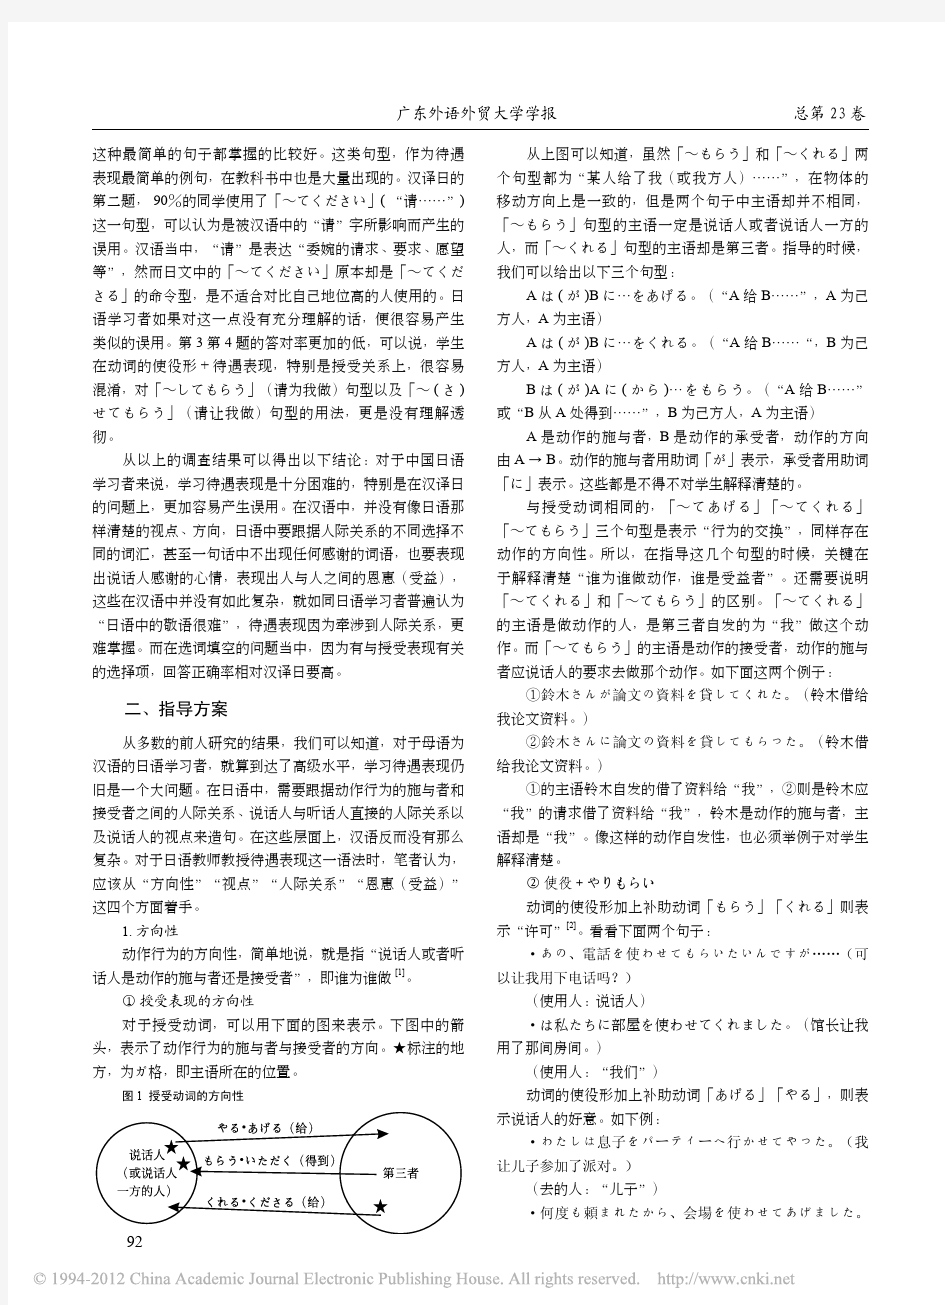 中国日语学习者待遇表现误用分析